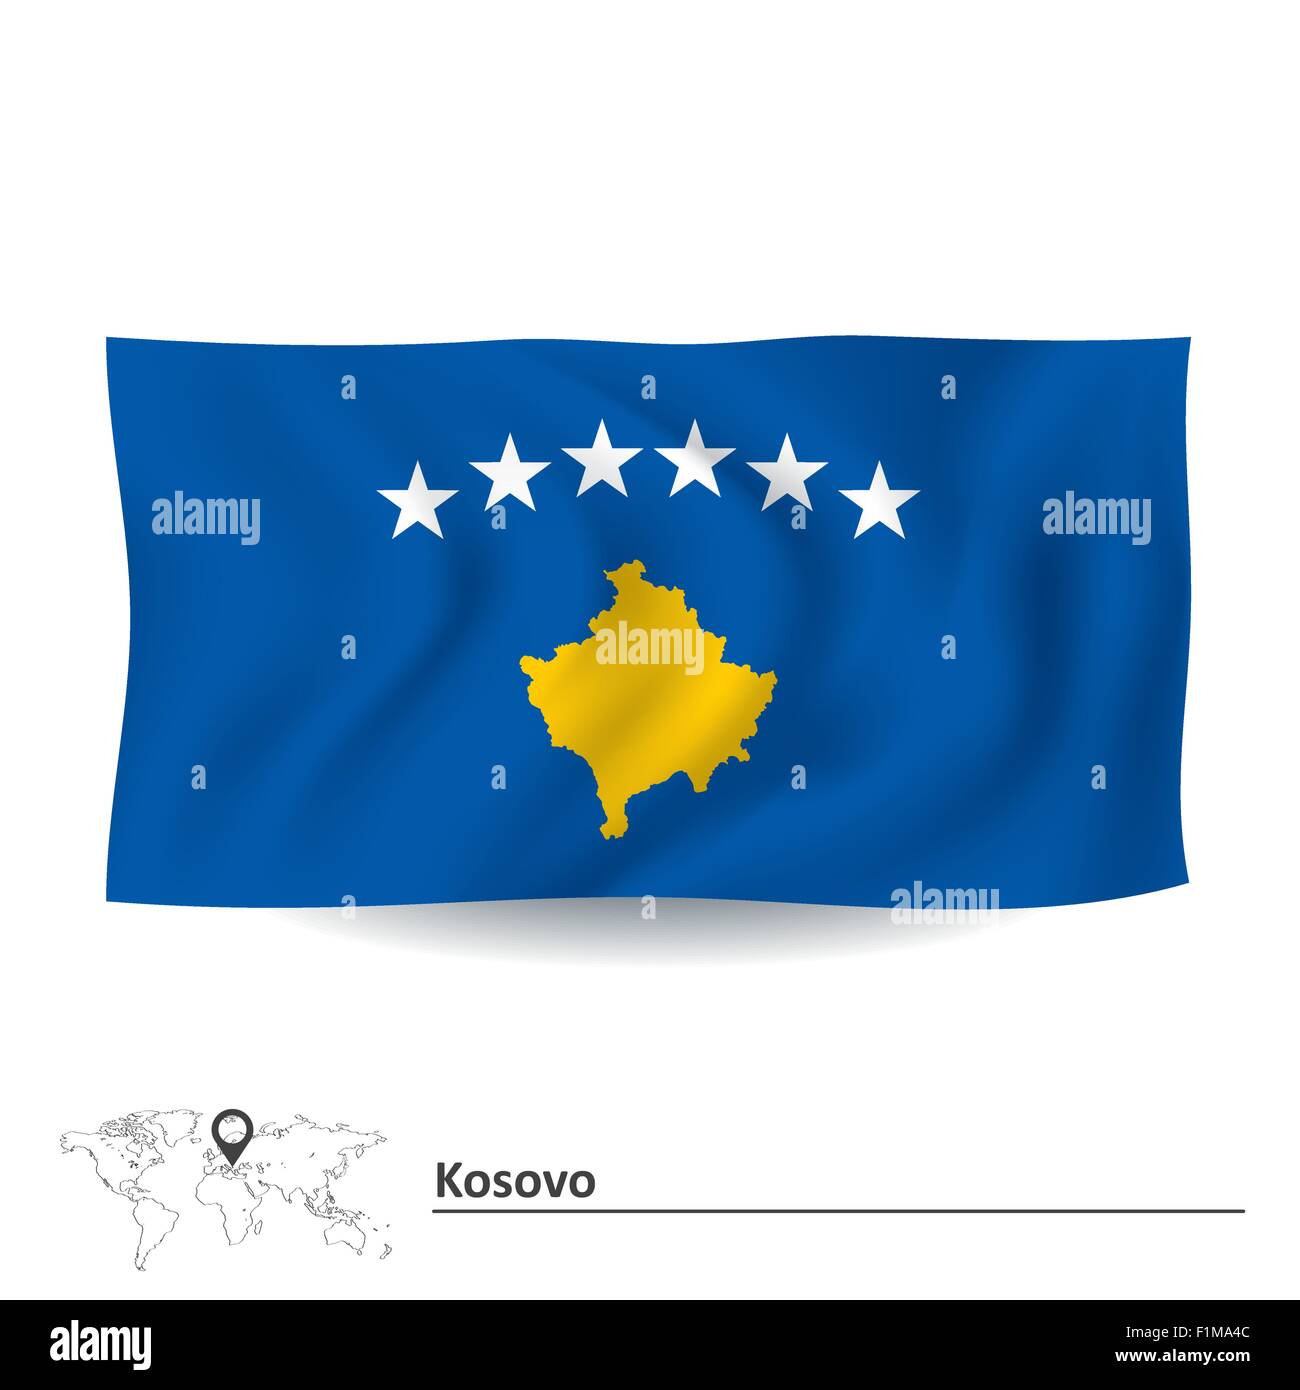 Flagge des Kosovo - Vektor-illustration Stock Vektor